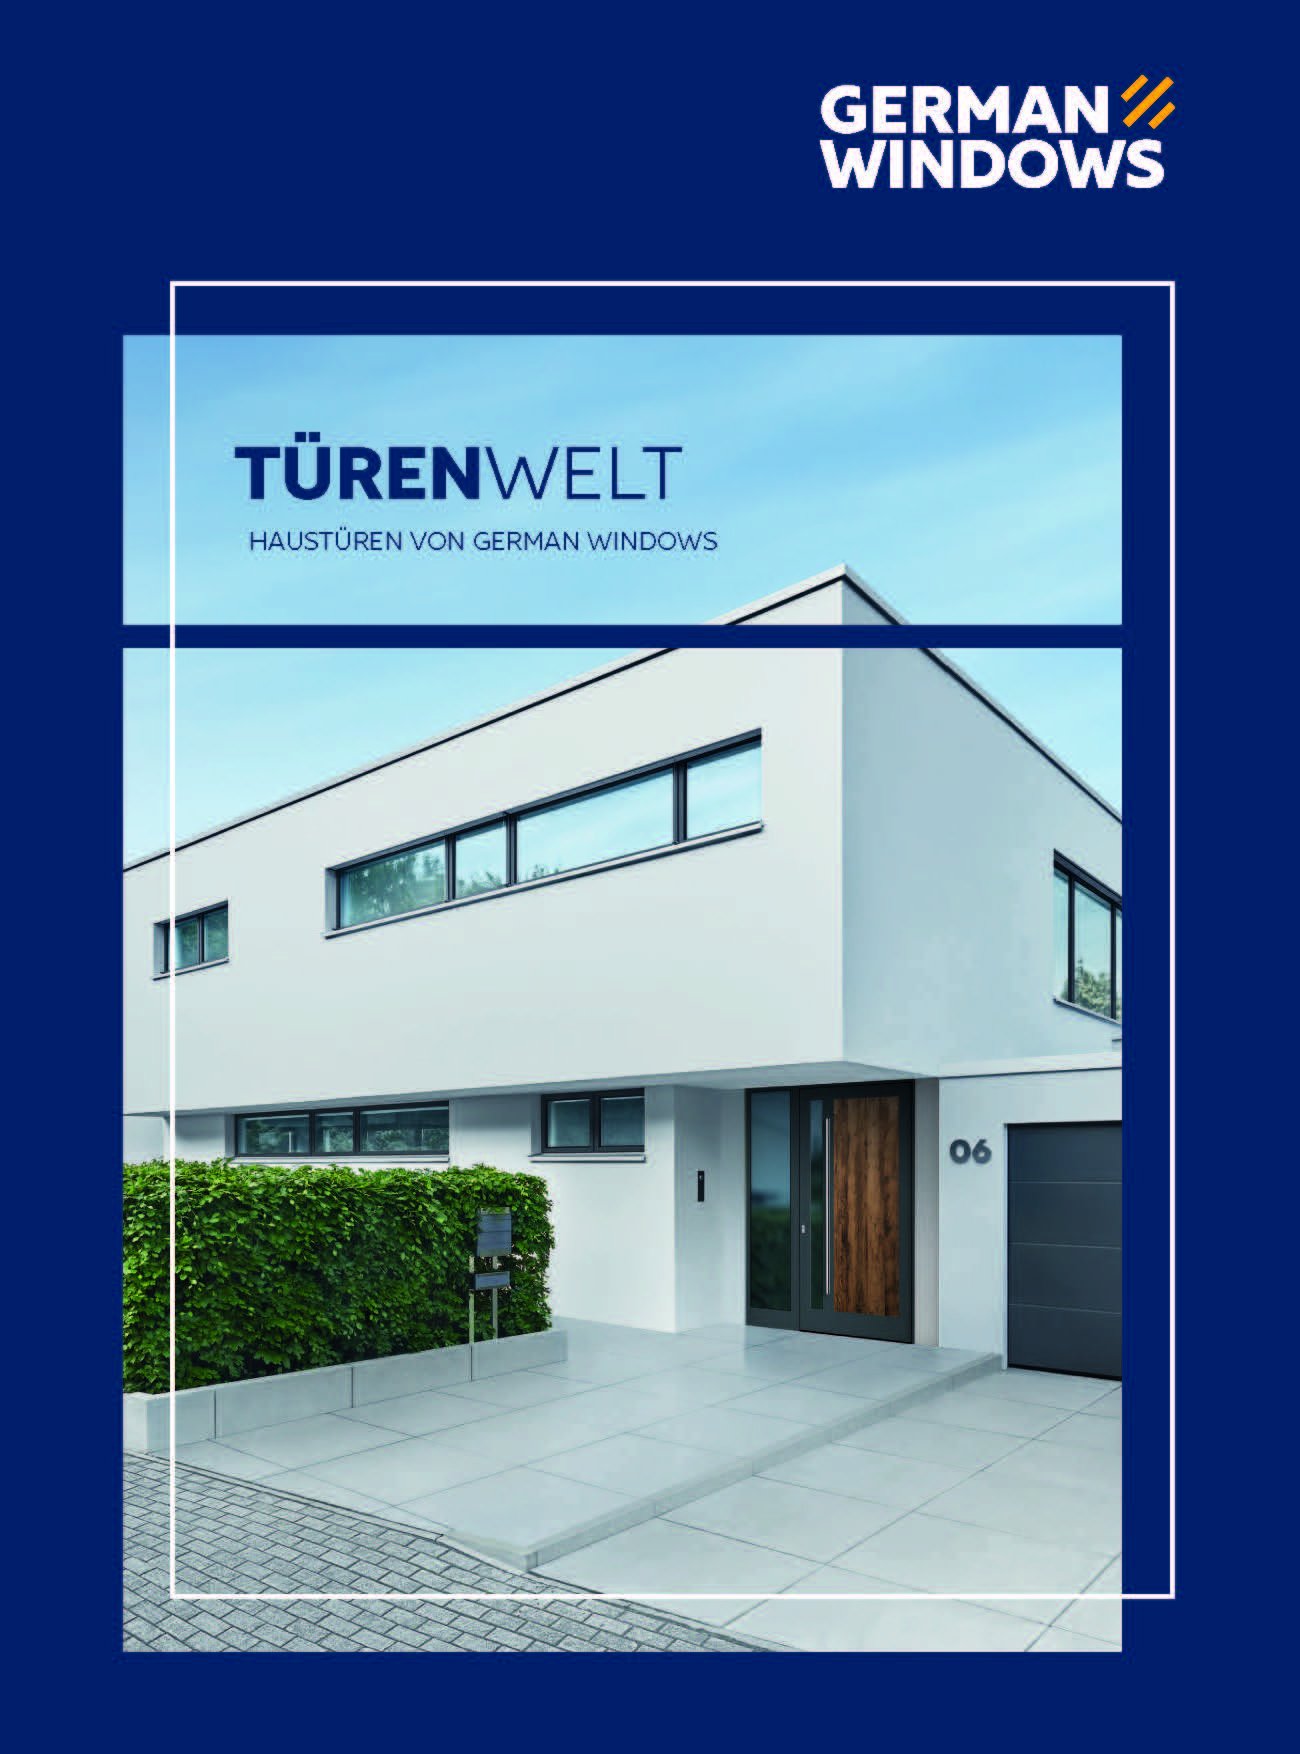 Titelseite des Katalogs 'TÜRENWELT' von GERMAN WINDOWS zeigt ein modernes Haus mit einer Haustür aus Holz und einer Garage mit grauem Tor. Über dem Bild steht in großen Buchstaben 'TÜRENWELT' und darunter 'HAUSTÜREN VON GERMAN WINDOWS'. Das Firmenlogo ist oben rechts platziert.